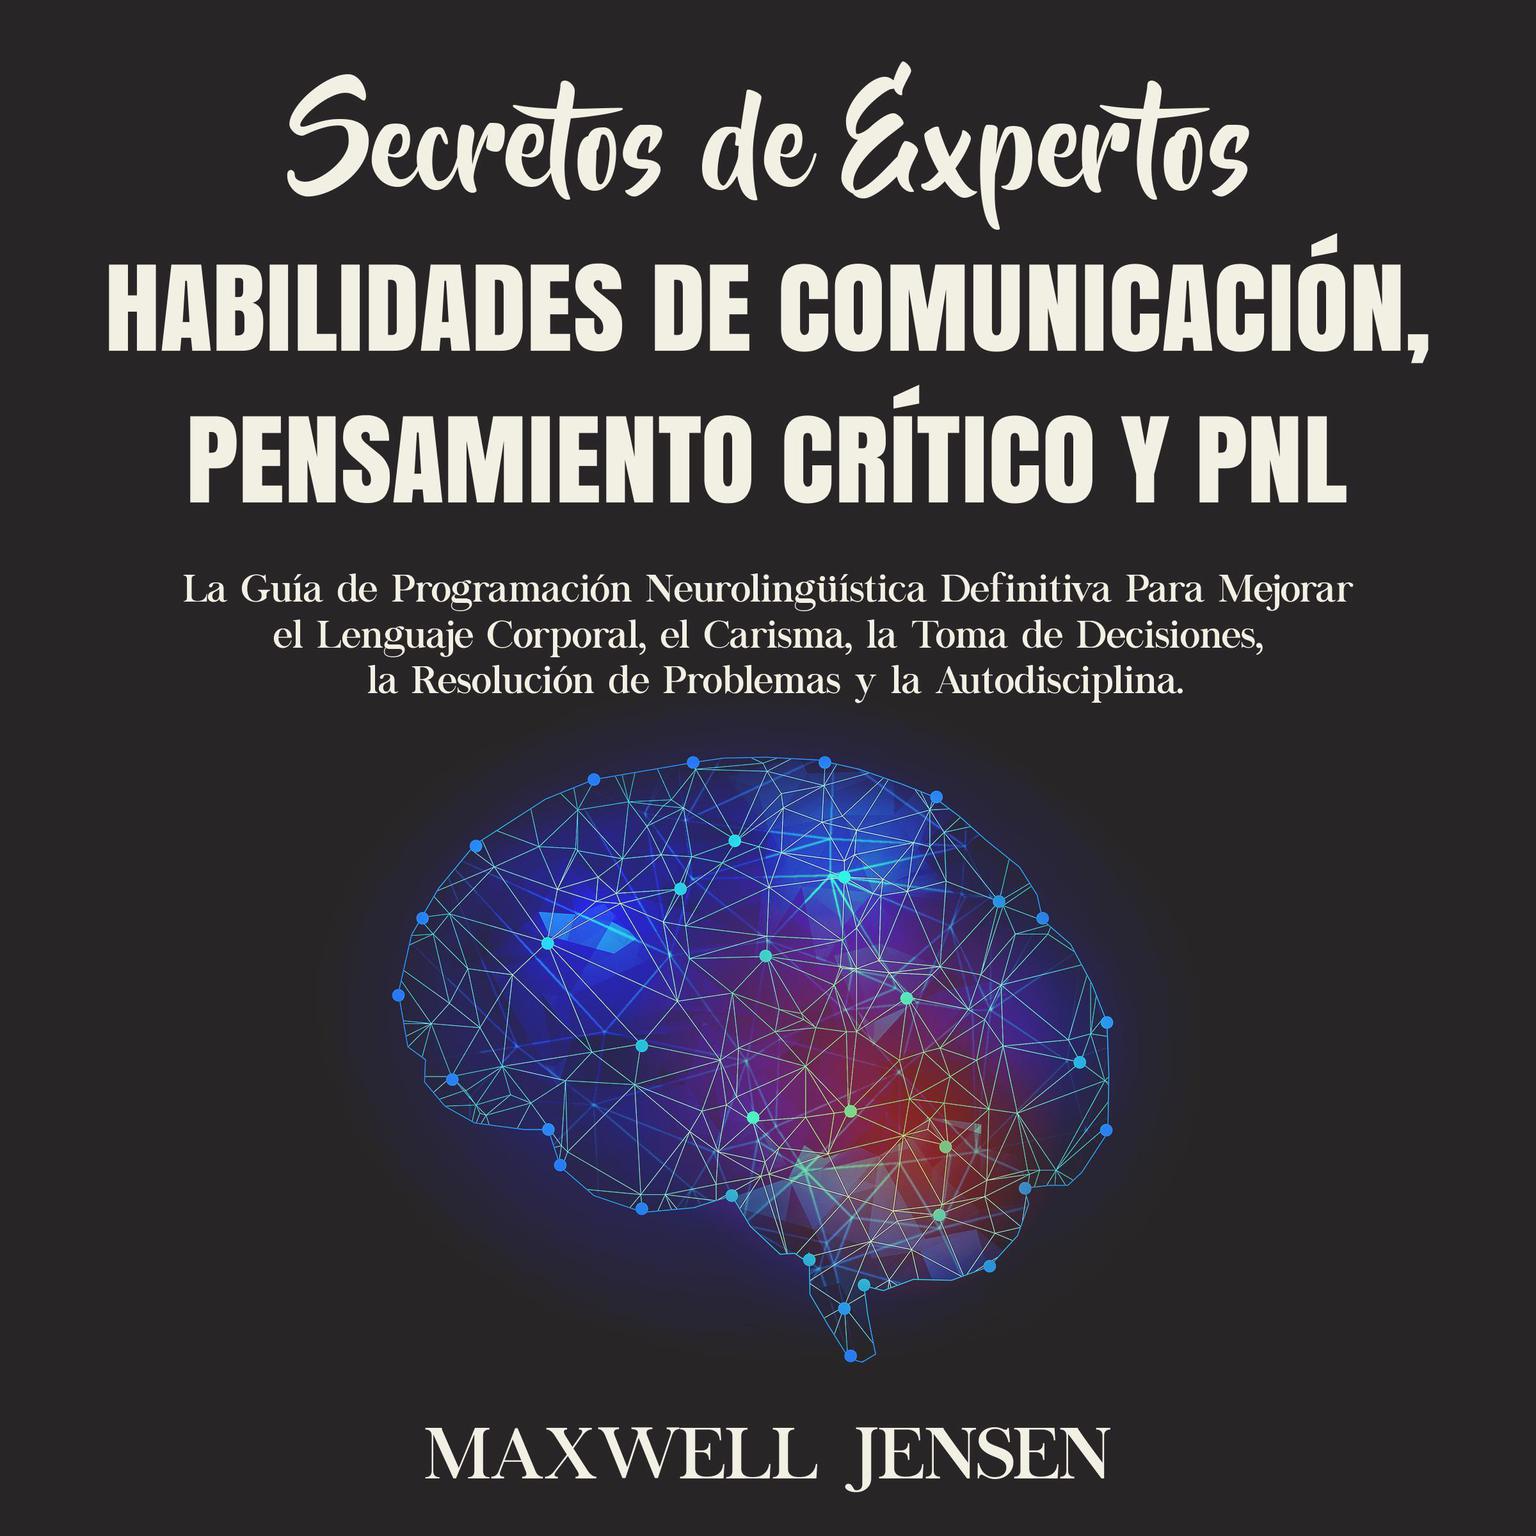 Secretos de Expertos - Habilidades de Comunicación, Pensamiento Crítico y PNL: La Guía de Programación Neurolingüística Definitiva Para Mejorar el Lenguaje Corporal, el Carisma, la Toma de Decisiones, la Resolución de Problemas y la Autodisciplina Audiobook, by Maxwell Jensen